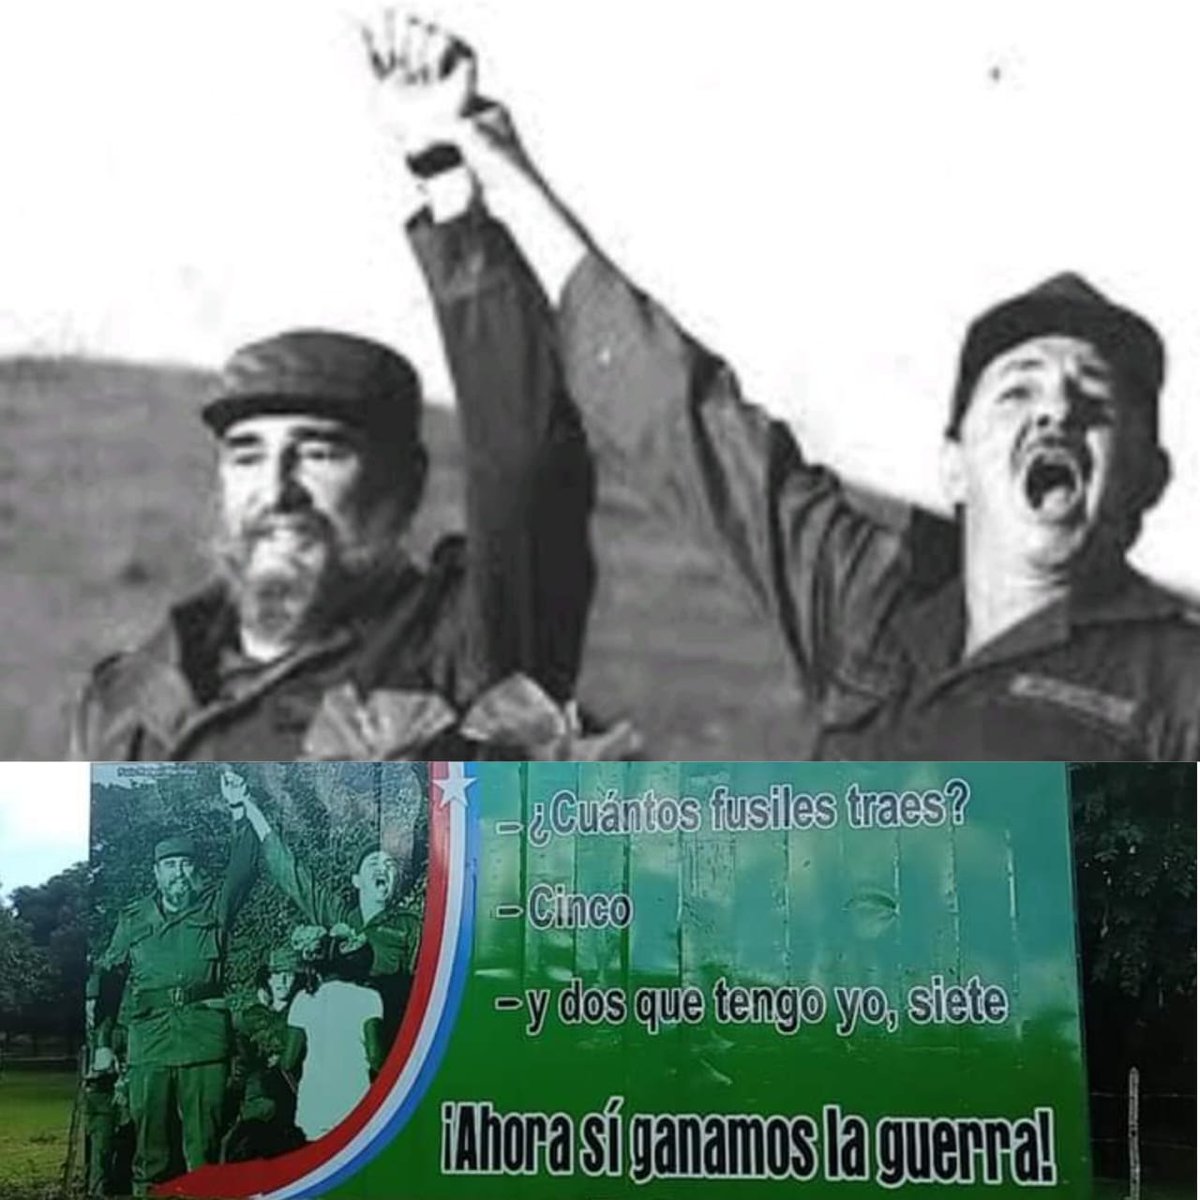 El 18 de diciembre de 1956 al encontrarse #Fidel con #Raúl, luego del desastre de Alegría de Pio y sumar siete fusiles, es una máxima expresión del optimismo y de la convicción de no rendirse jamás. #CubaViveEnSuHistoria #CubaCoopera @CubacooperaDj